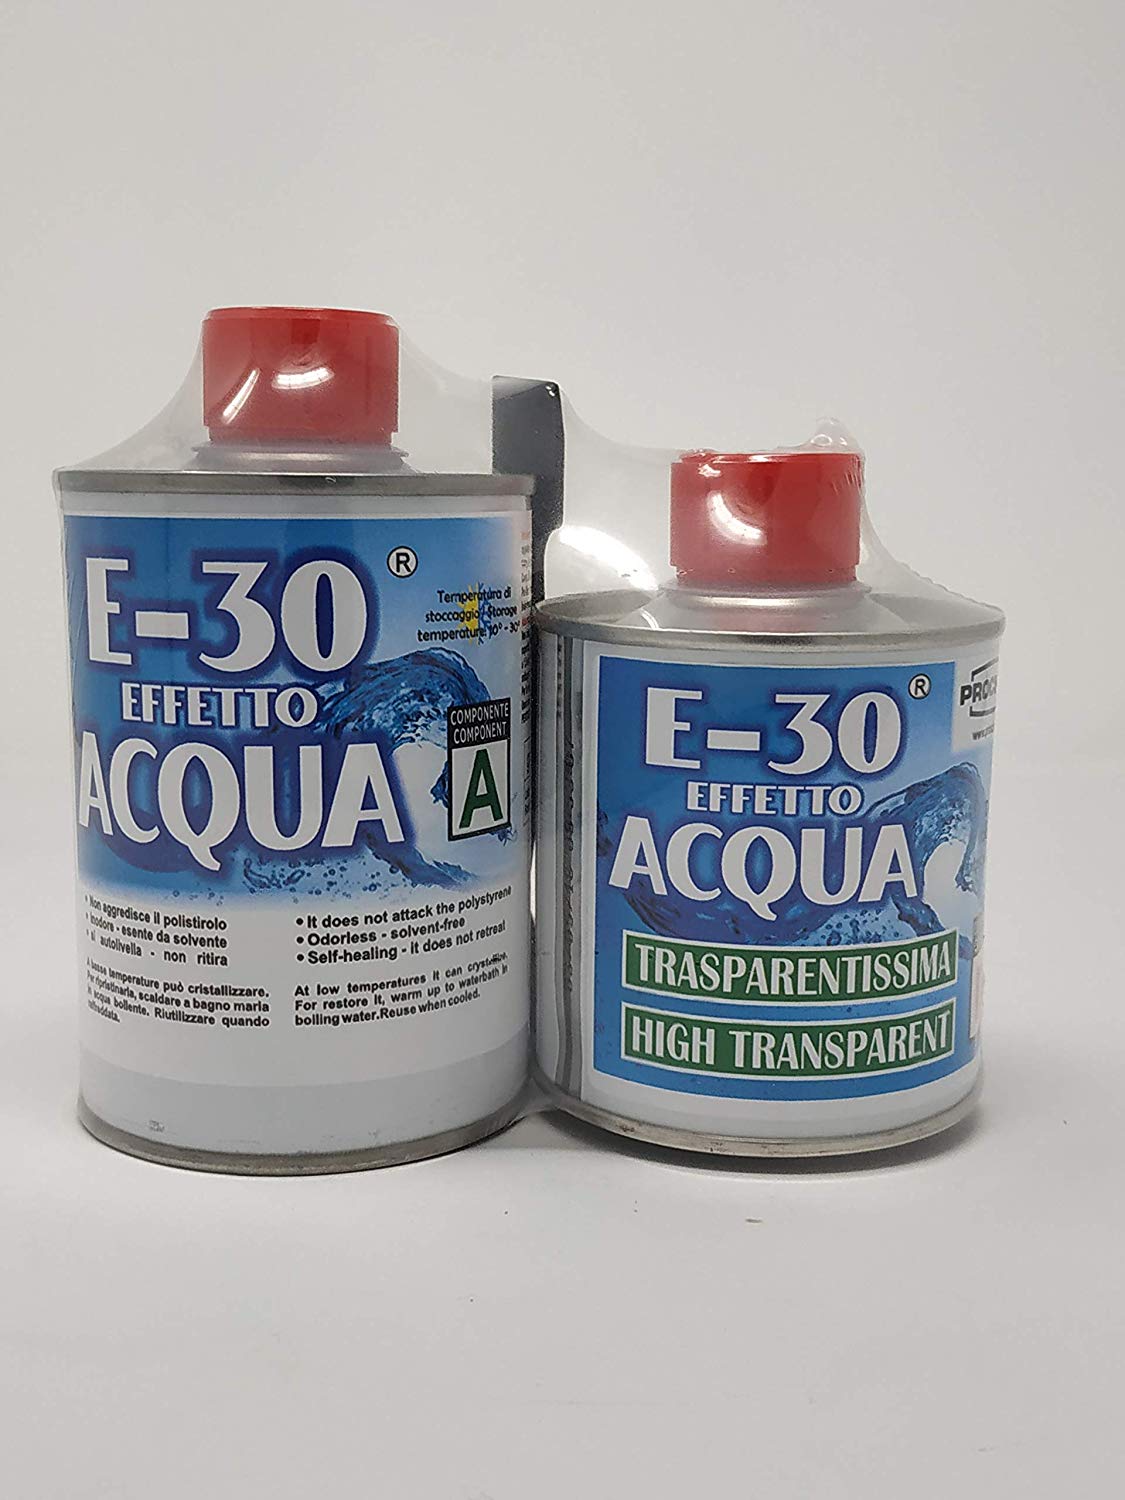 Resina E-30 bicomponente effetto acqua Prochima